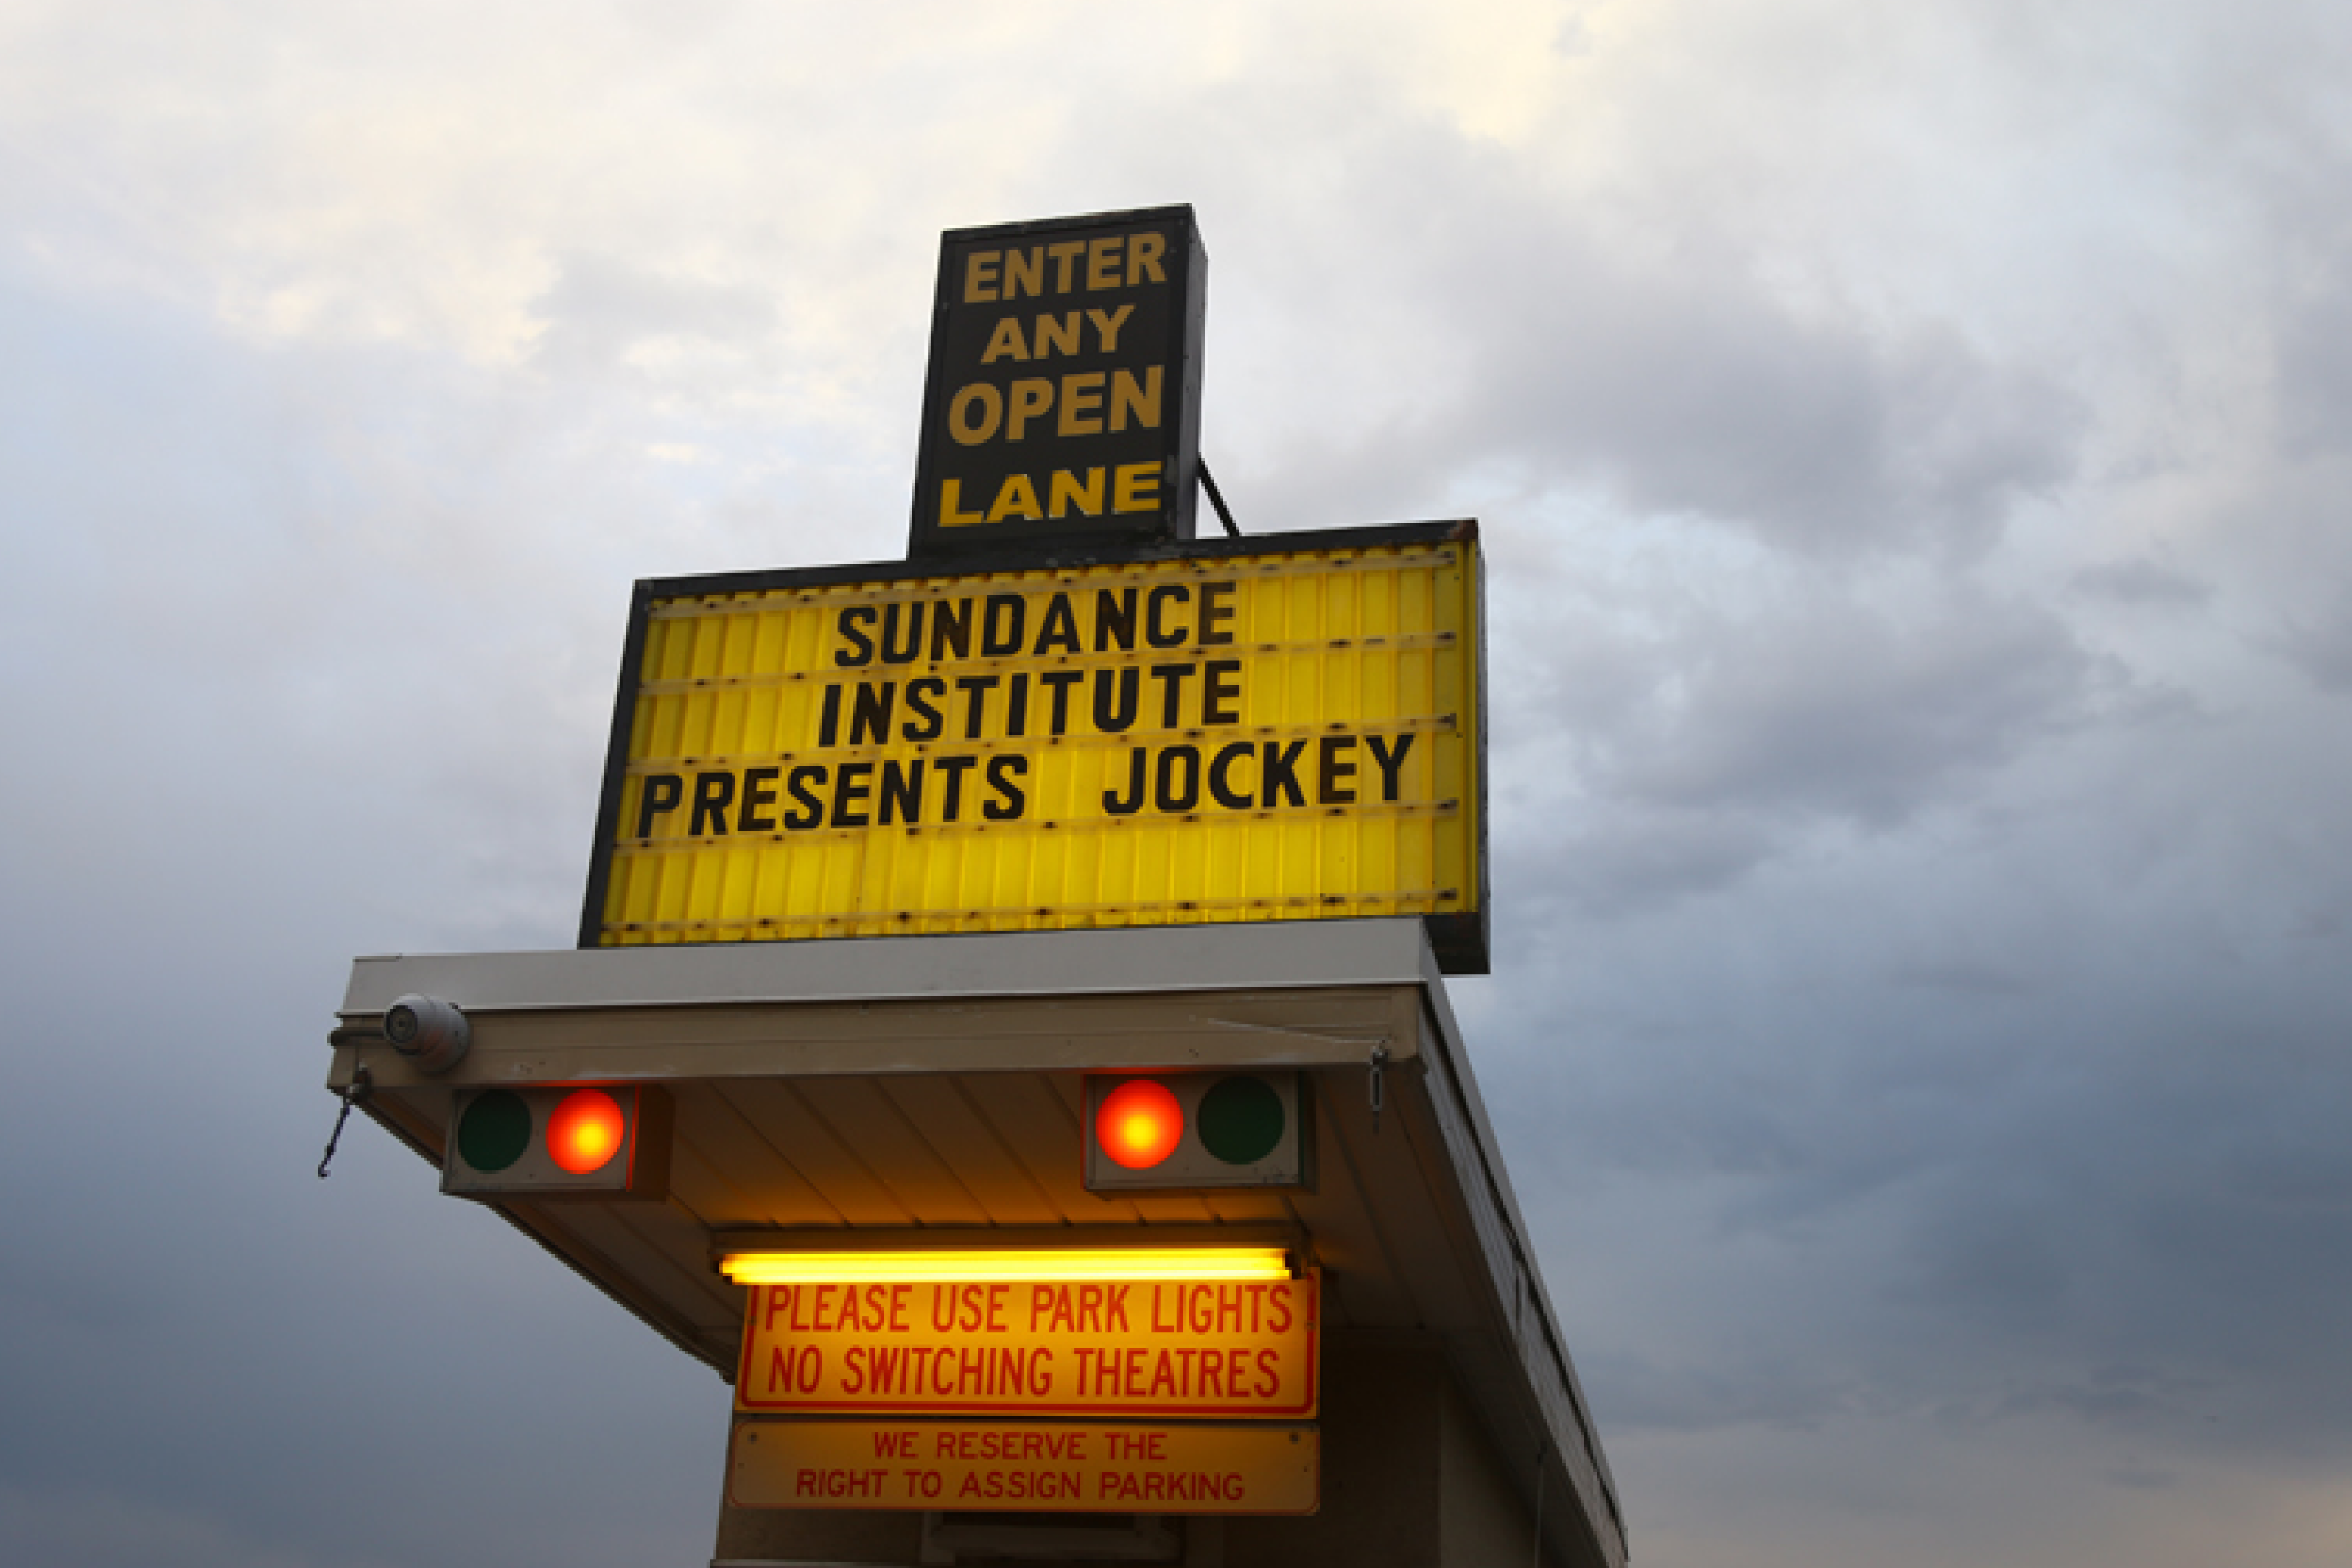 「サンダンス インスティテュートが Jockey を上映」と表示した屋外の電光掲示板